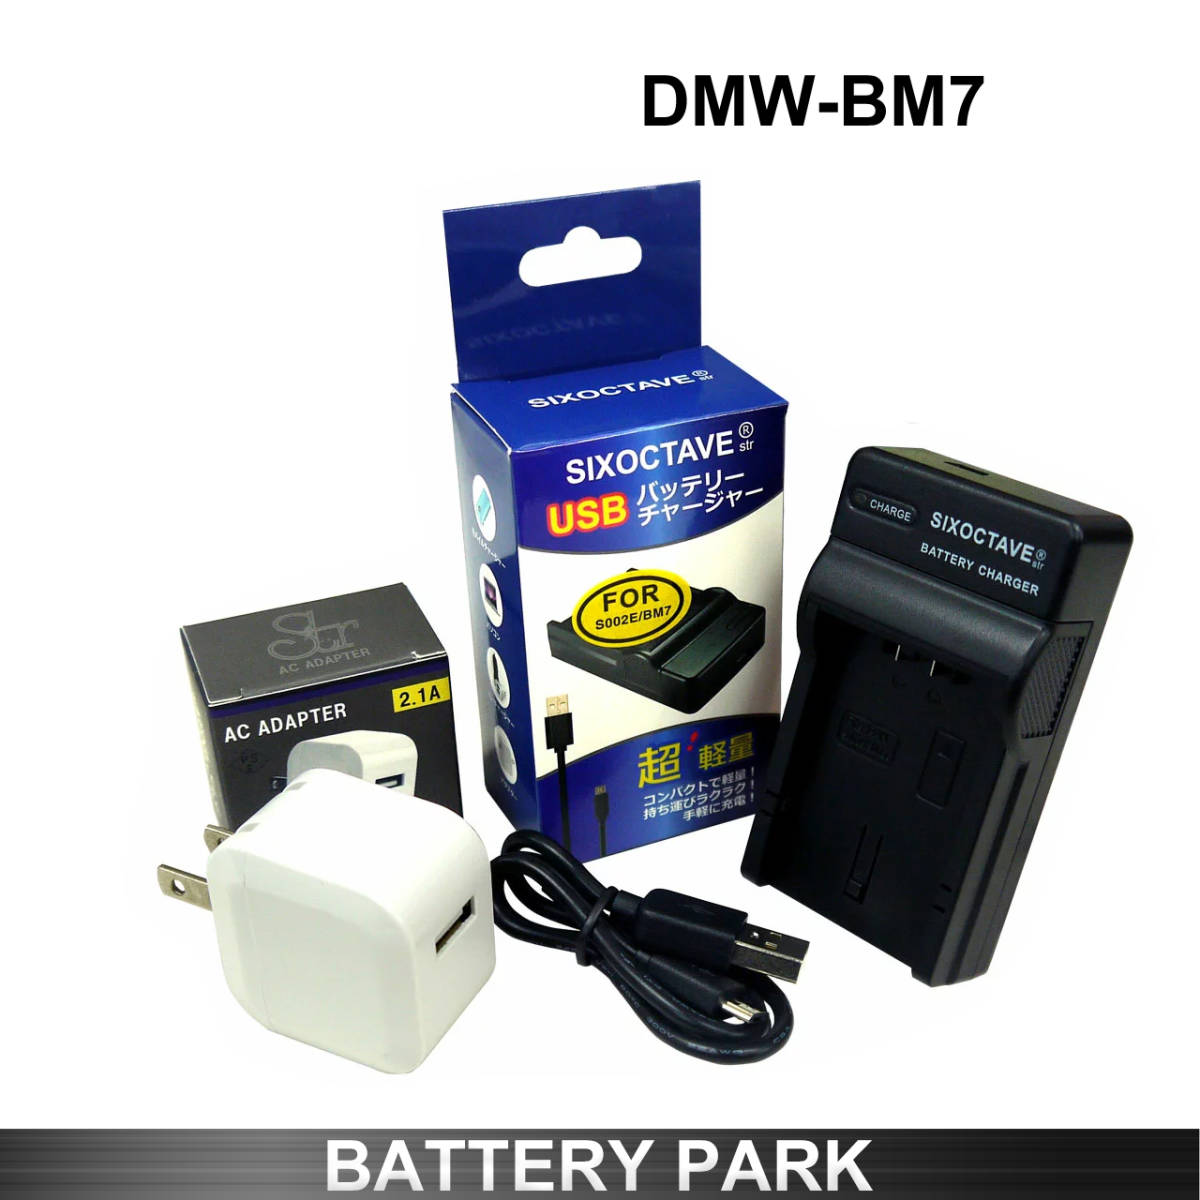 正規認証品 新規格 パナソニック Dmw Bm7 対応互換充電器 2 1a高速ac